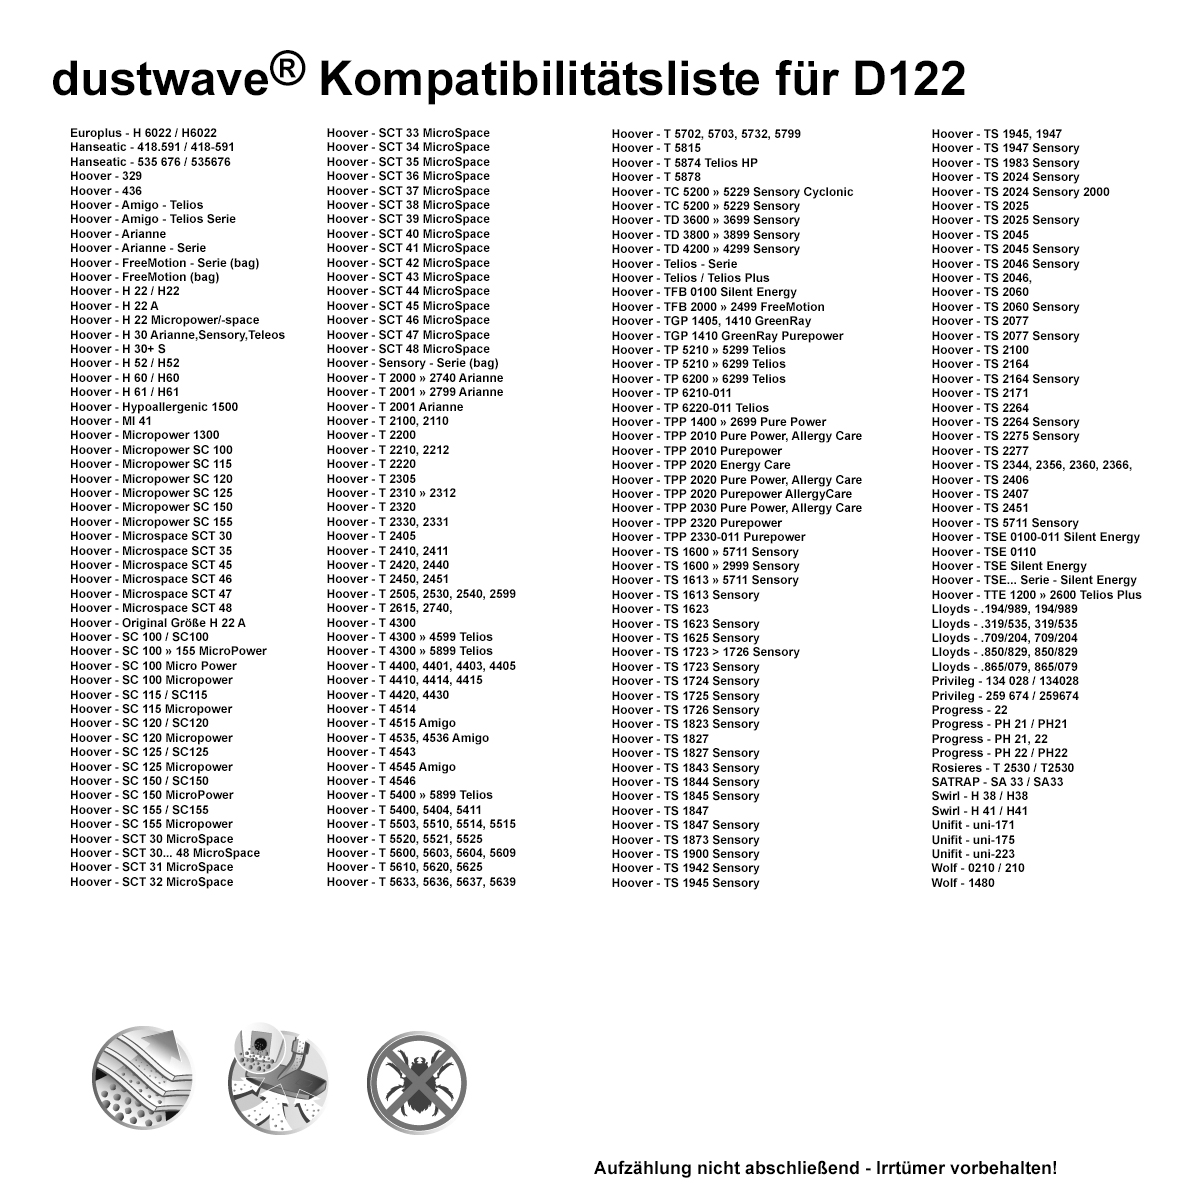 Dustwave® 20 Staubsaugerbeutel für Hoover AR30 / TRAR30 - hocheffizient, mehrlagiges Mikrovlies mit Hygieneverschluss - Made in Germany